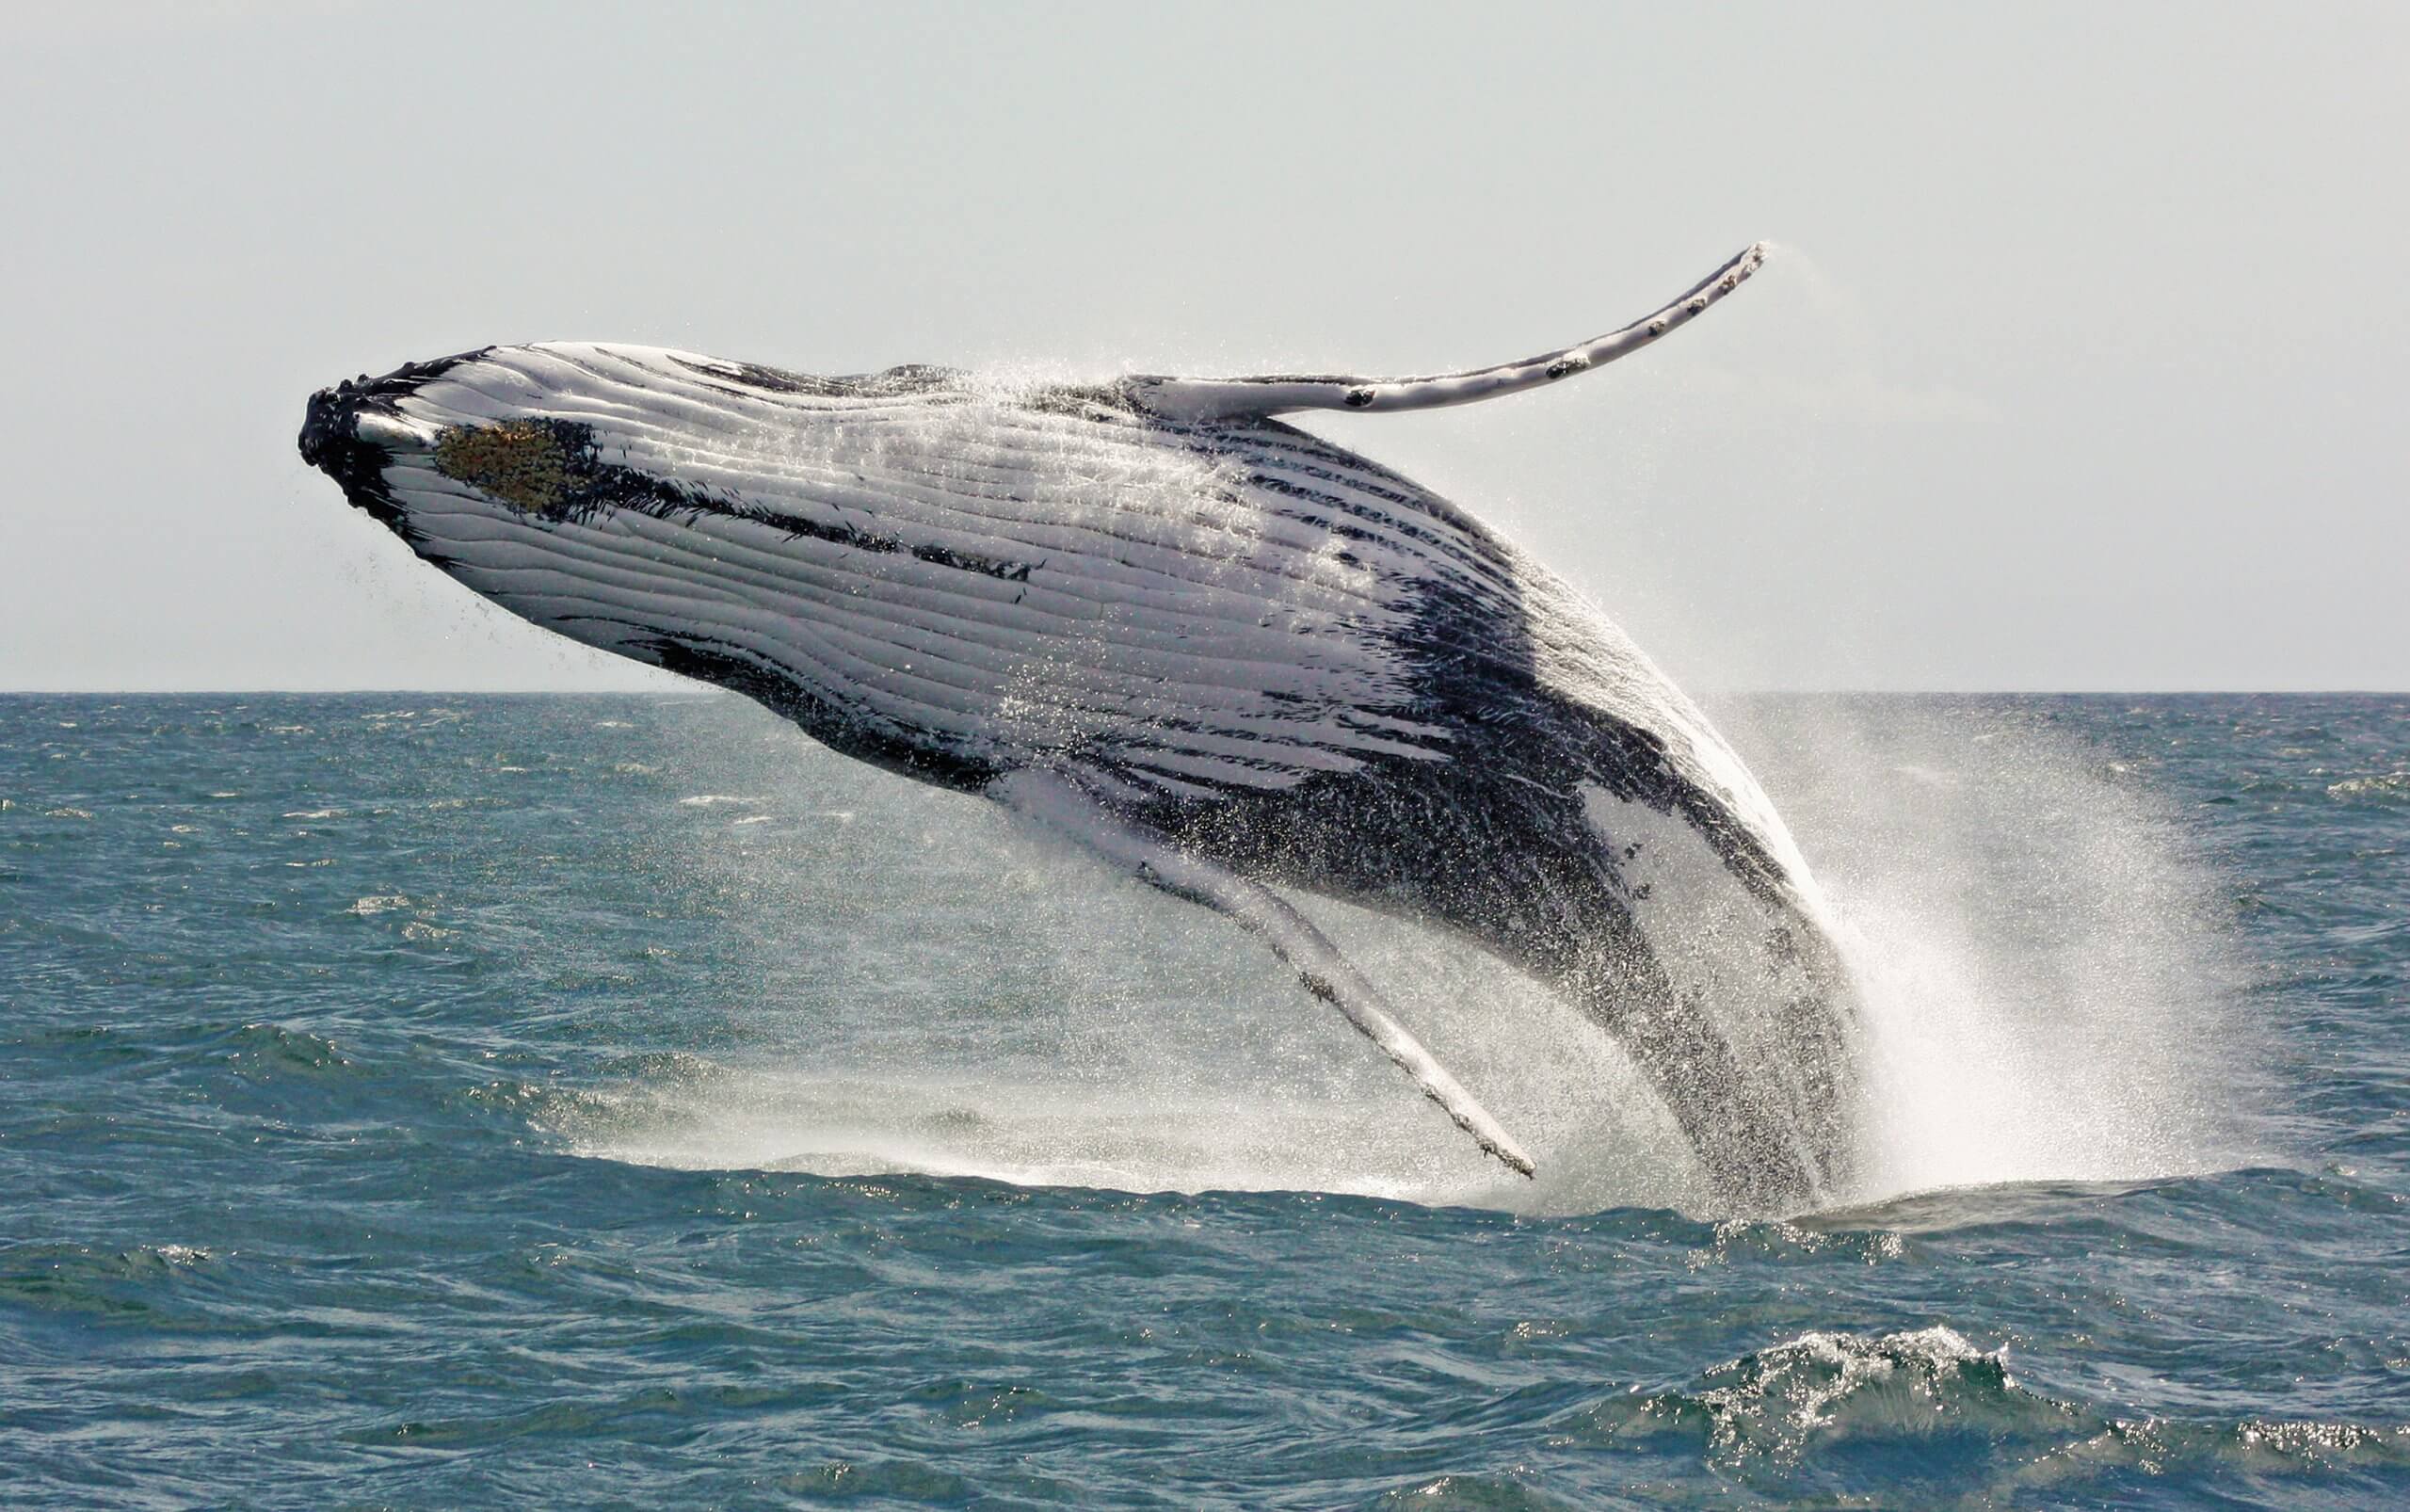 blåhvalen verdens største dyr? | Den Blå Planet